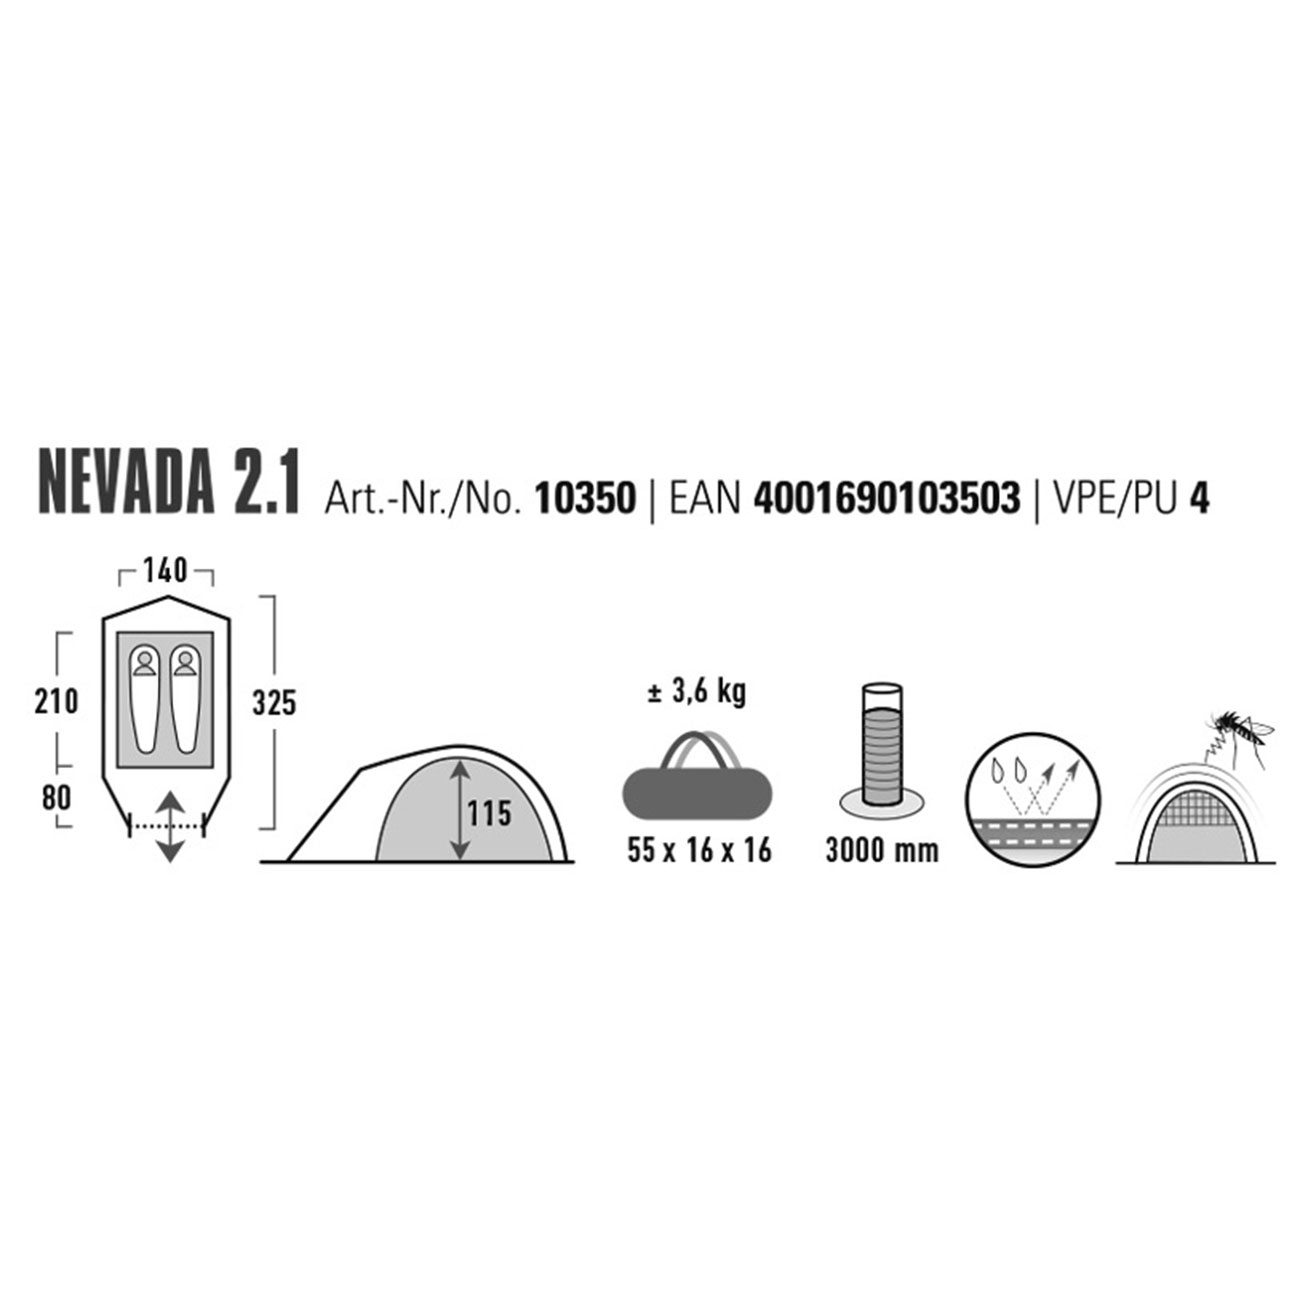 High Peak Zelt Nevada 2.1 dunkelgrn fr max. 2 Personen Bild 1